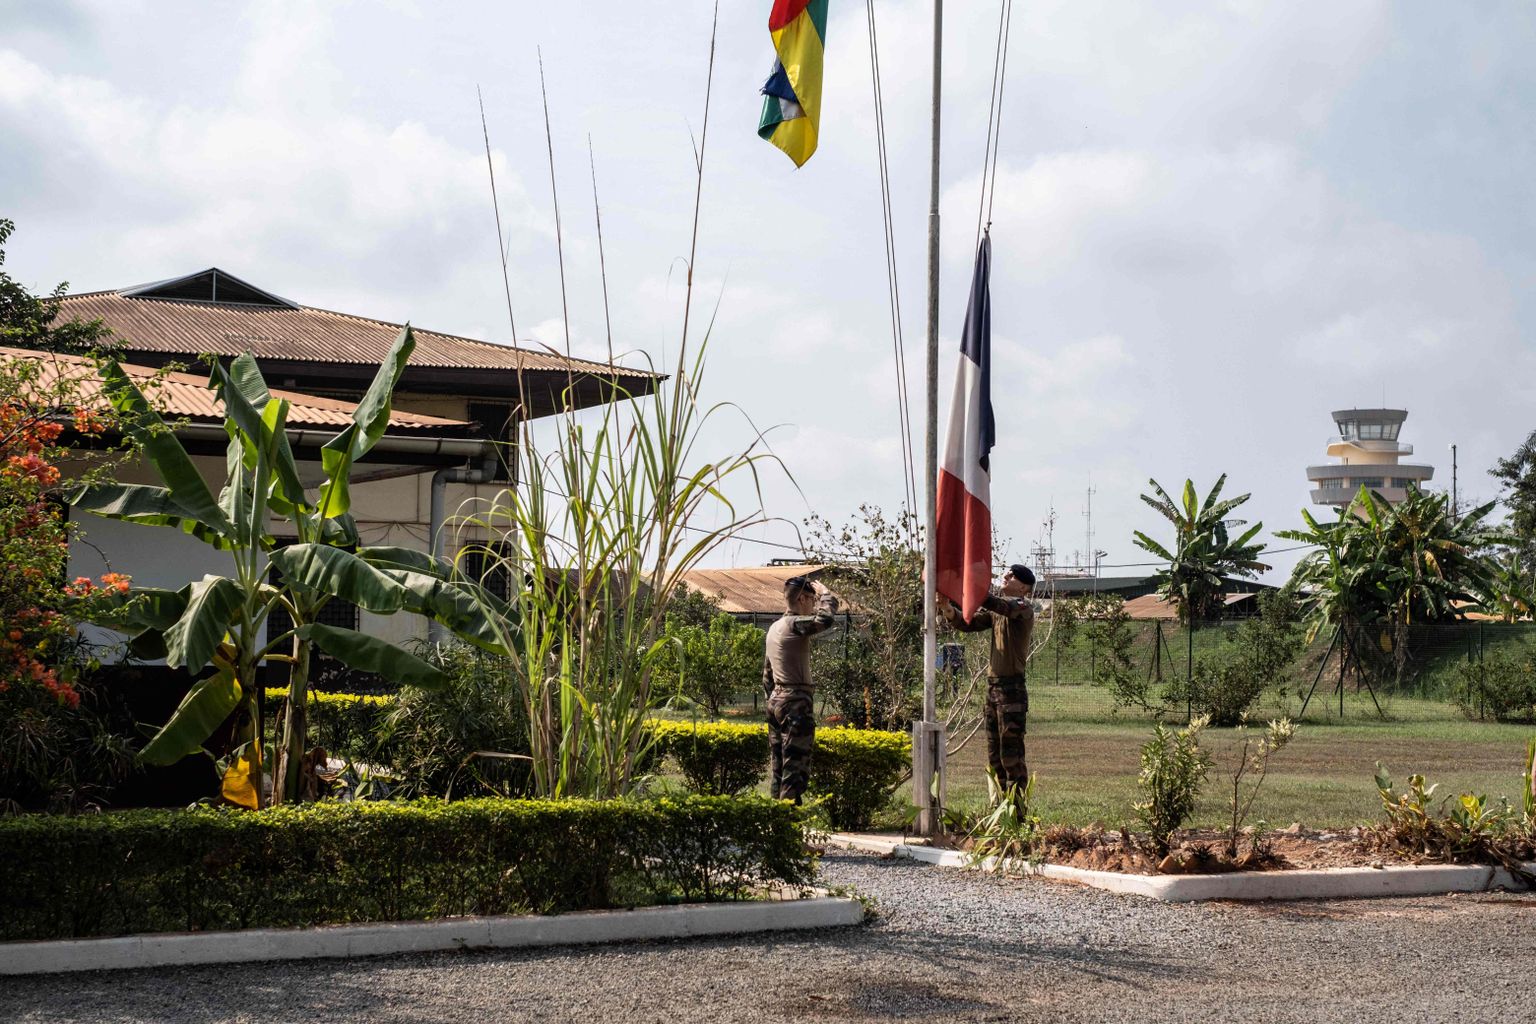 Prantsuse sõdurid langetamas eile Prantsusmaa lippu Bangui lennujaamas enne riigist lahkumist.